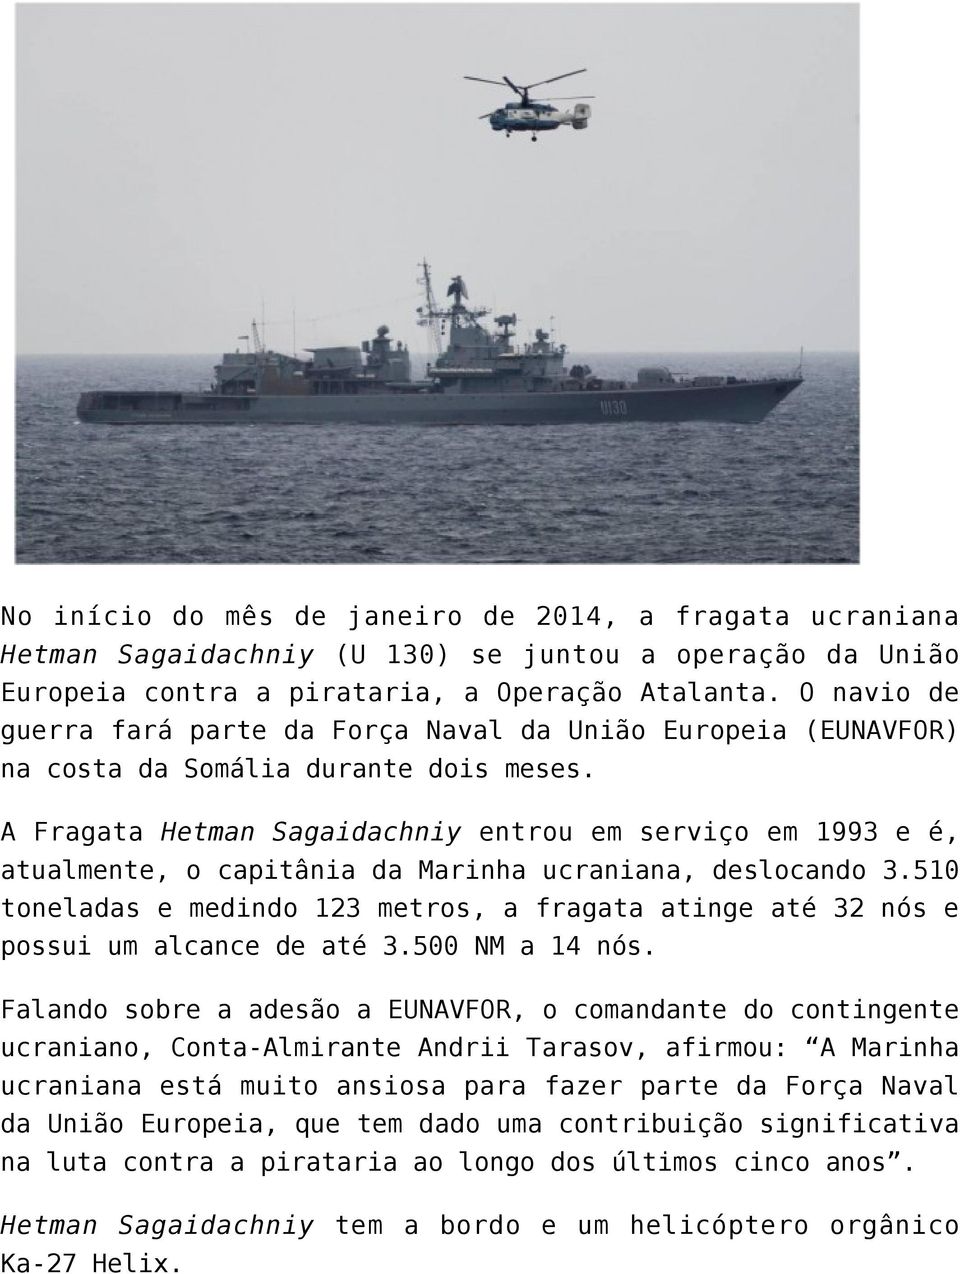 A Fragata Hetman Sagaidachniy entrou em serviço em 1993 e é, atualmente, o capitânia da Marinha ucraniana, deslocando 3.